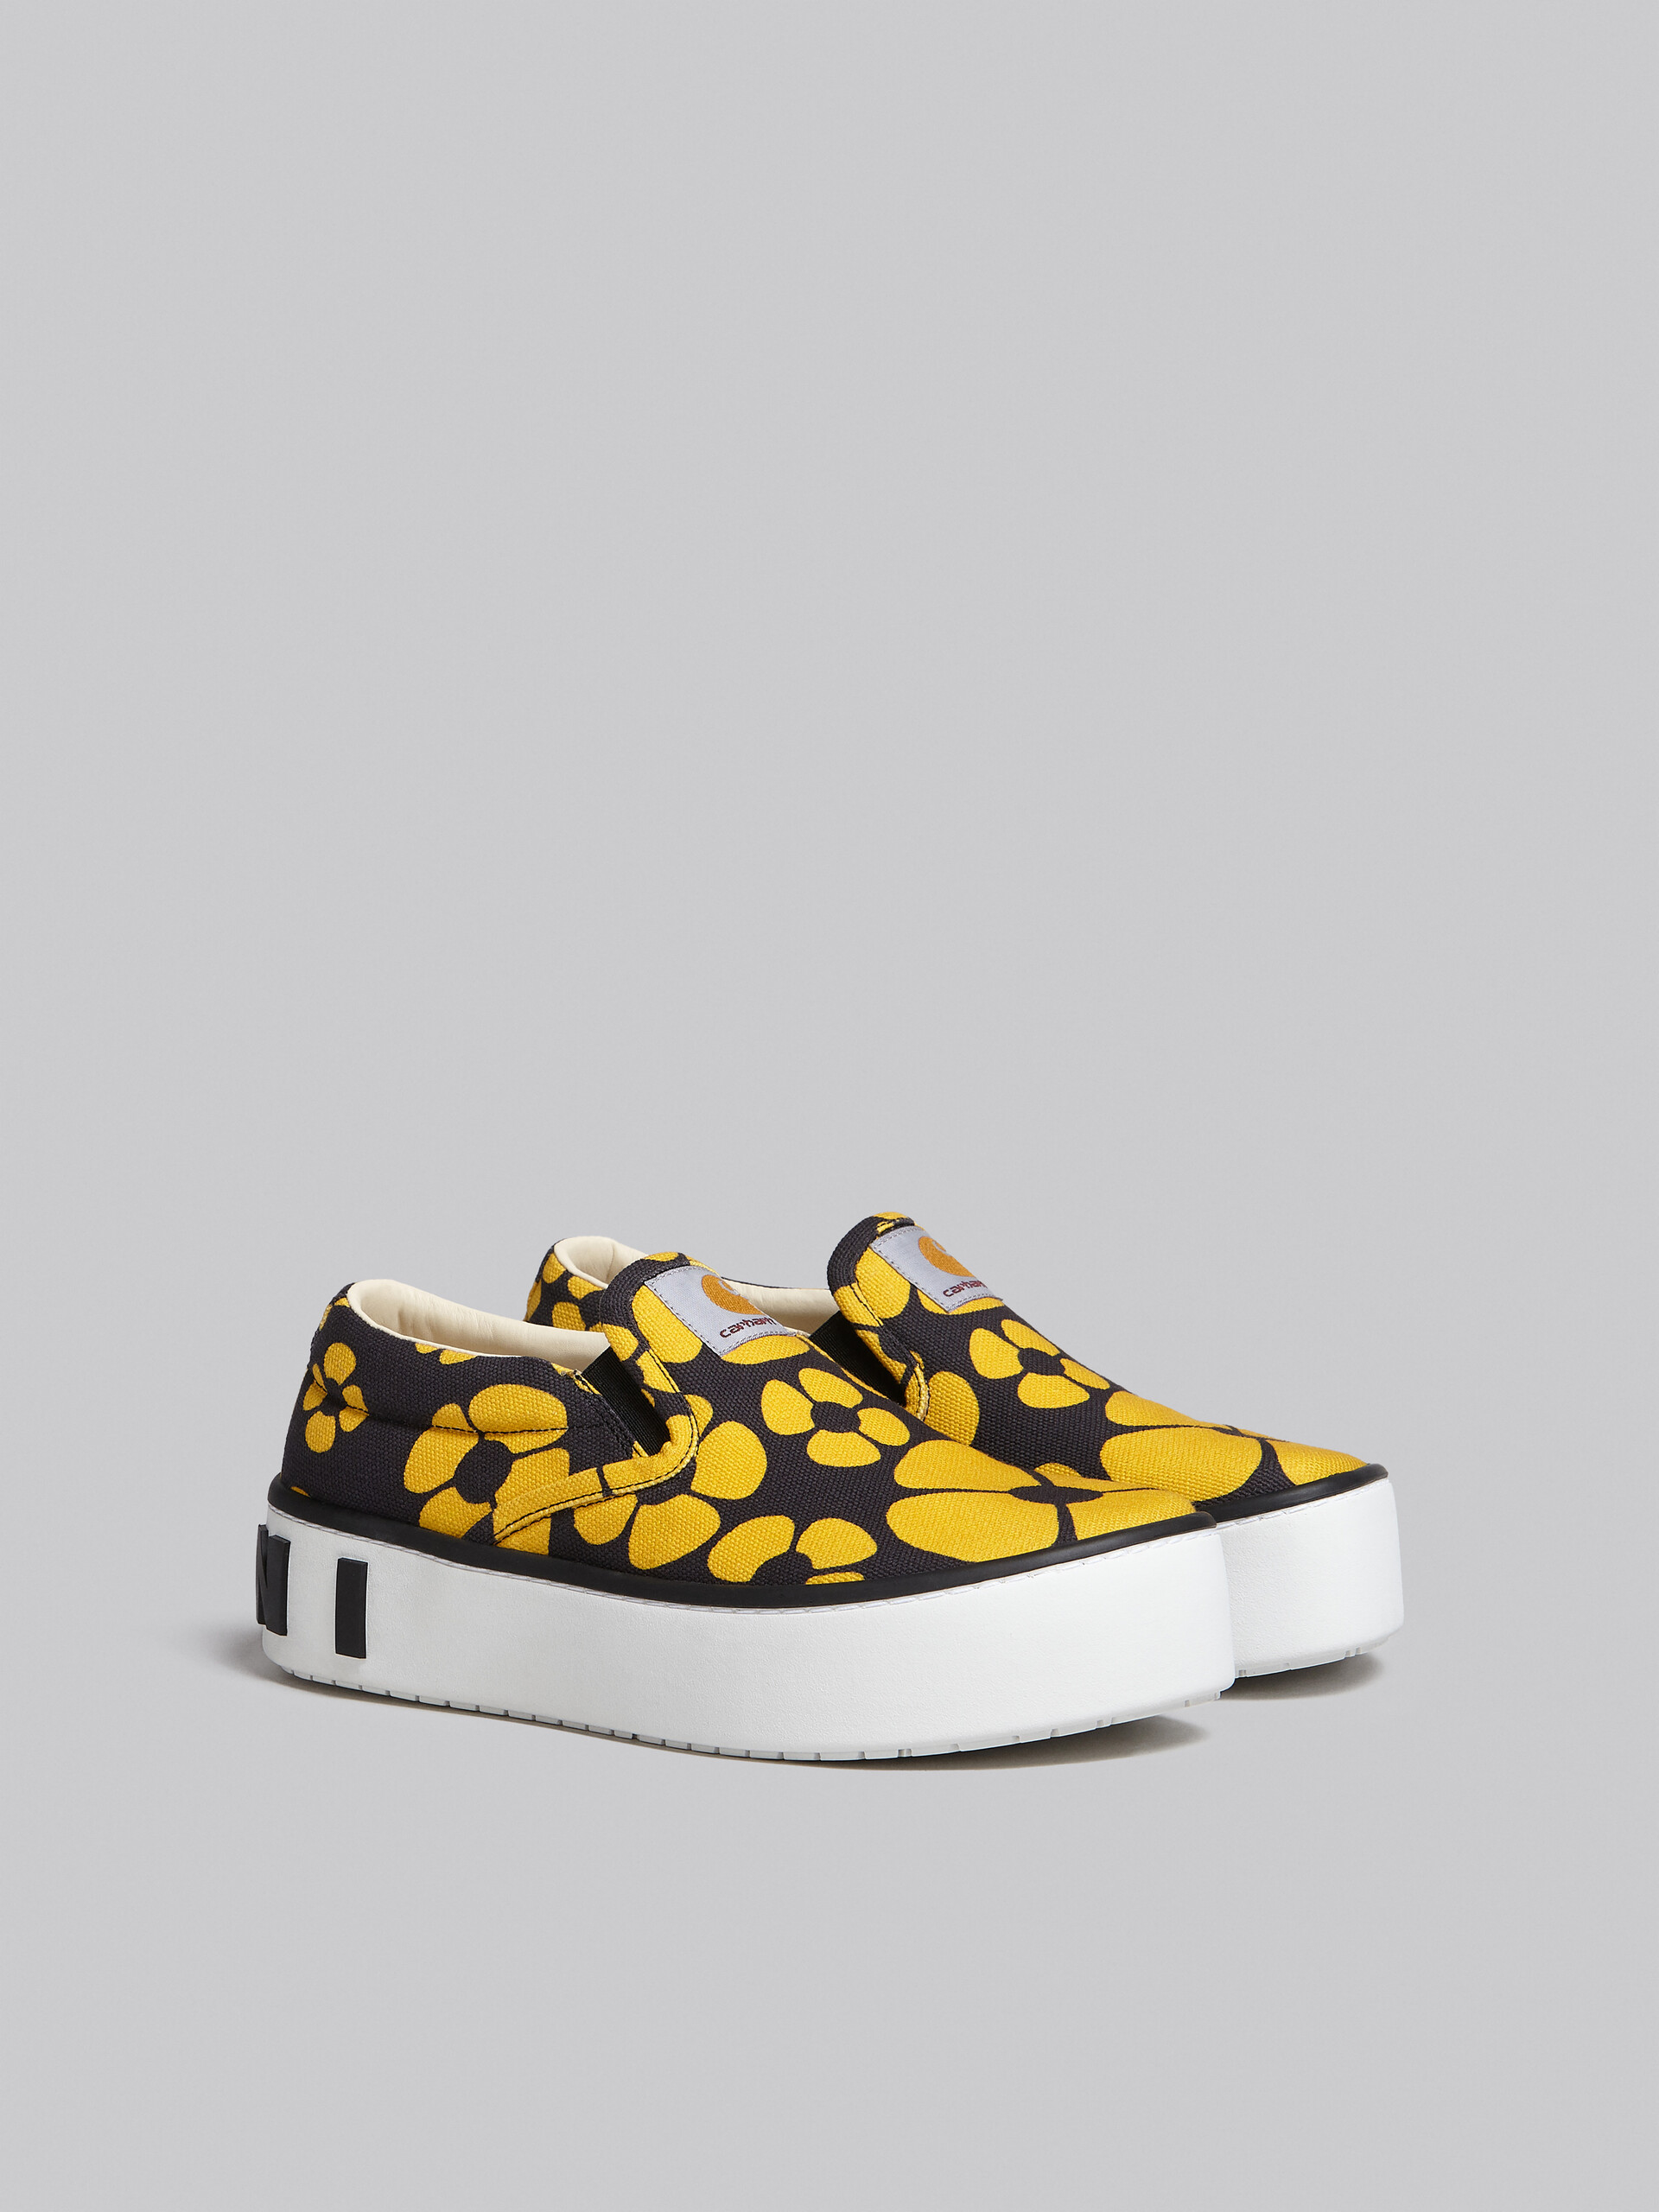 MARNI x CARHARTT WIP - yellow slip-on sneakers - Sneakers - Image 2